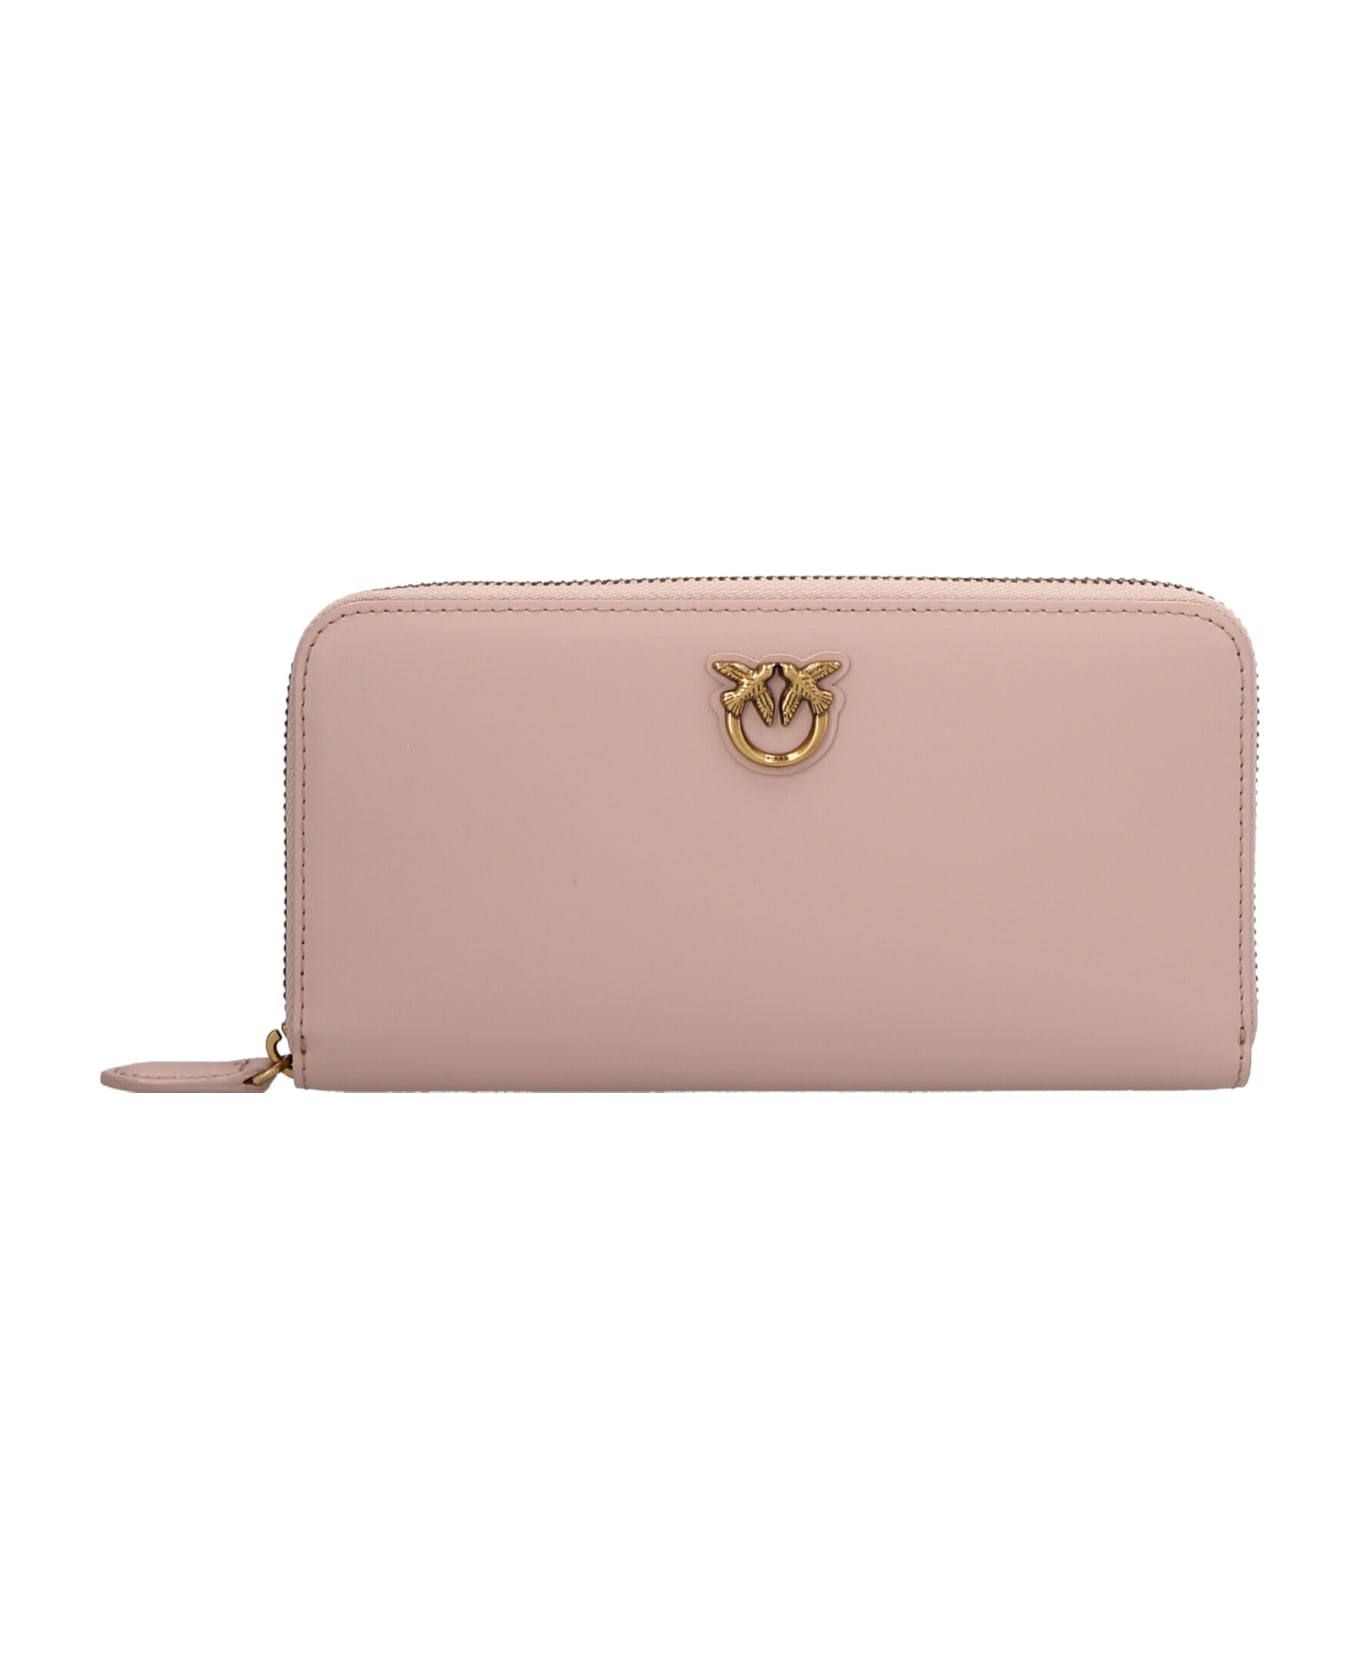 Pinko Zip Around Wallet - Pale pink